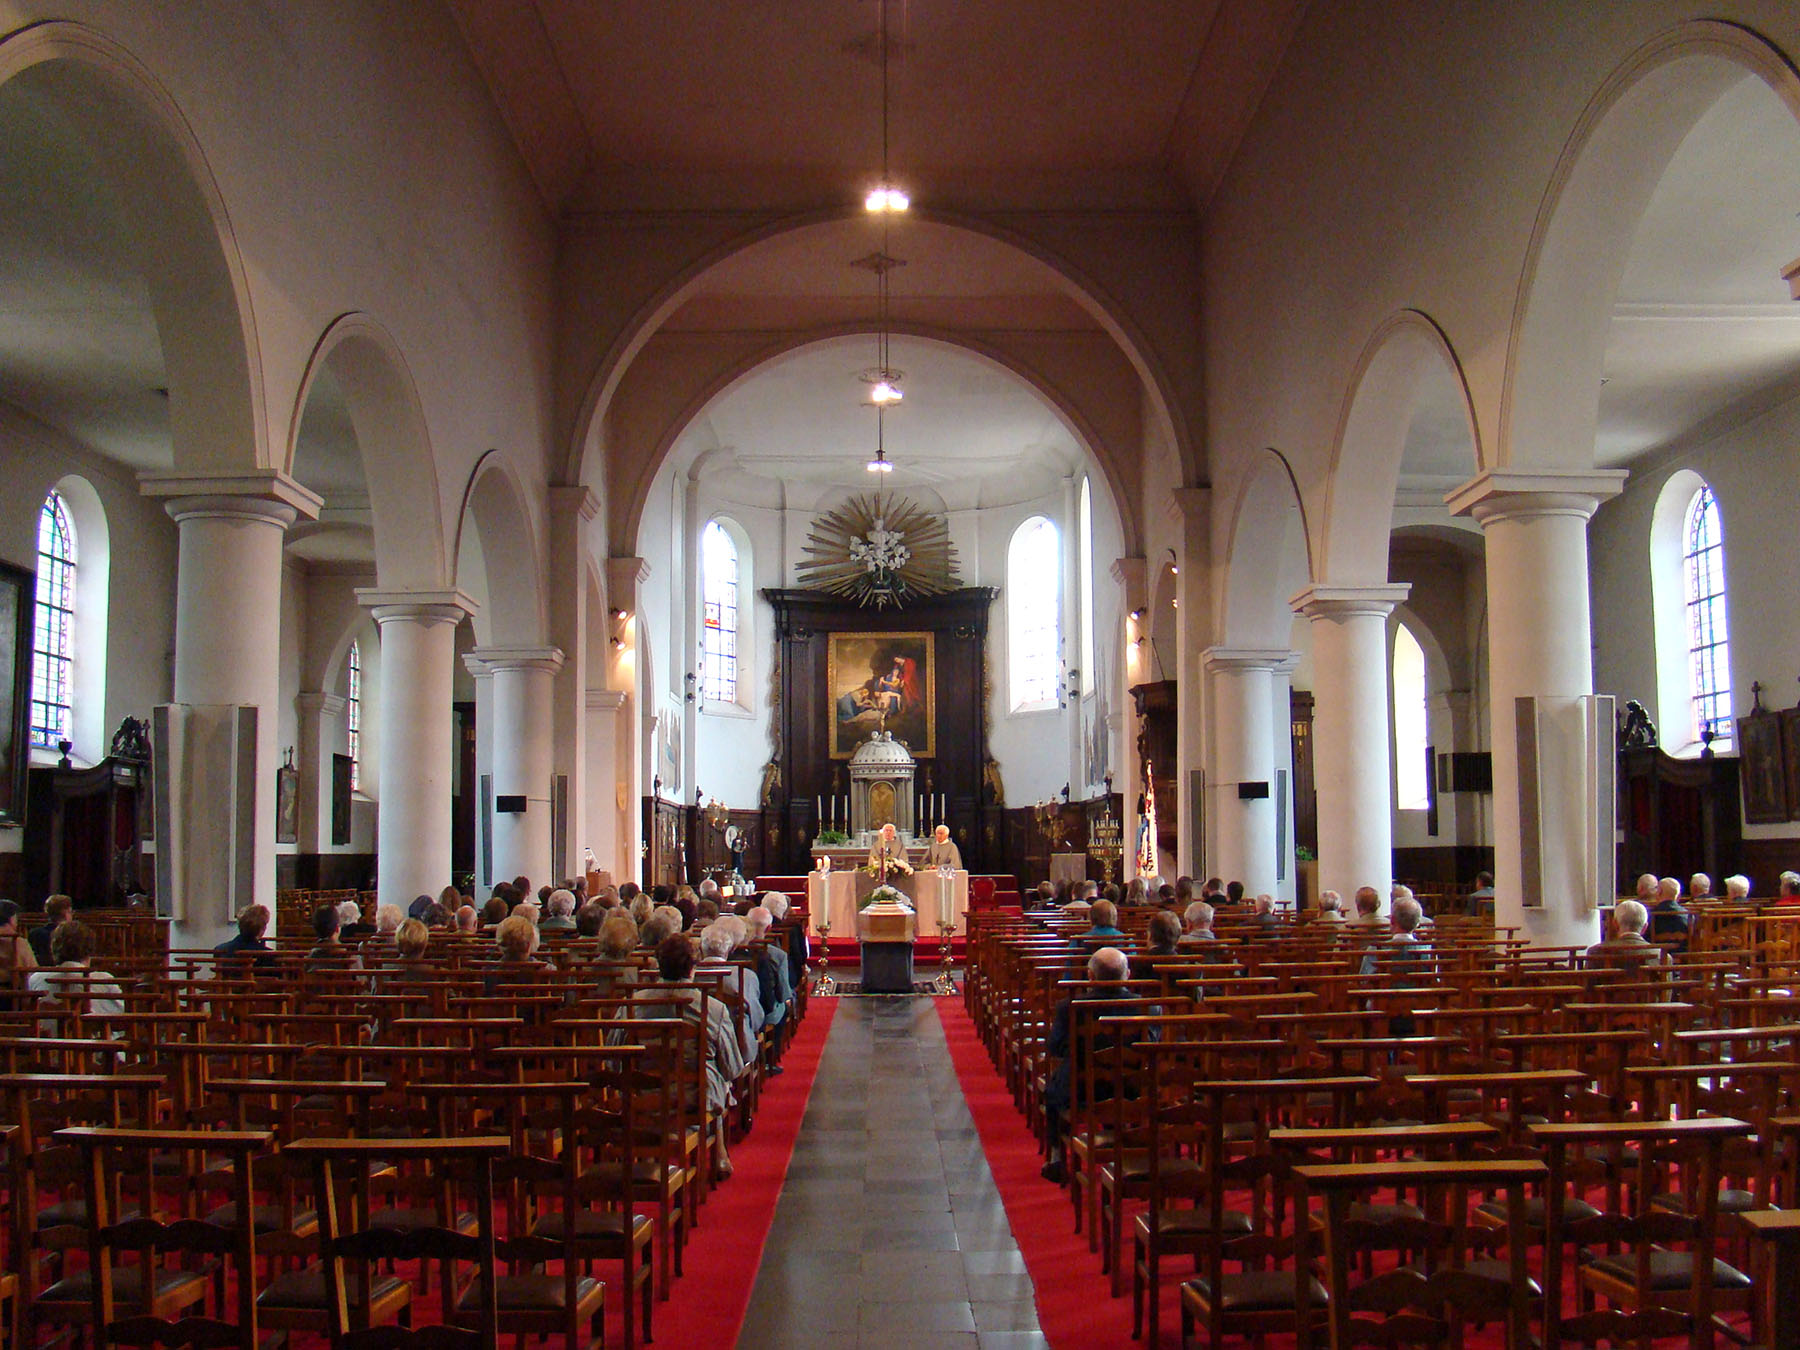 Sint-Columbakerk in Deerlijk (interieur)